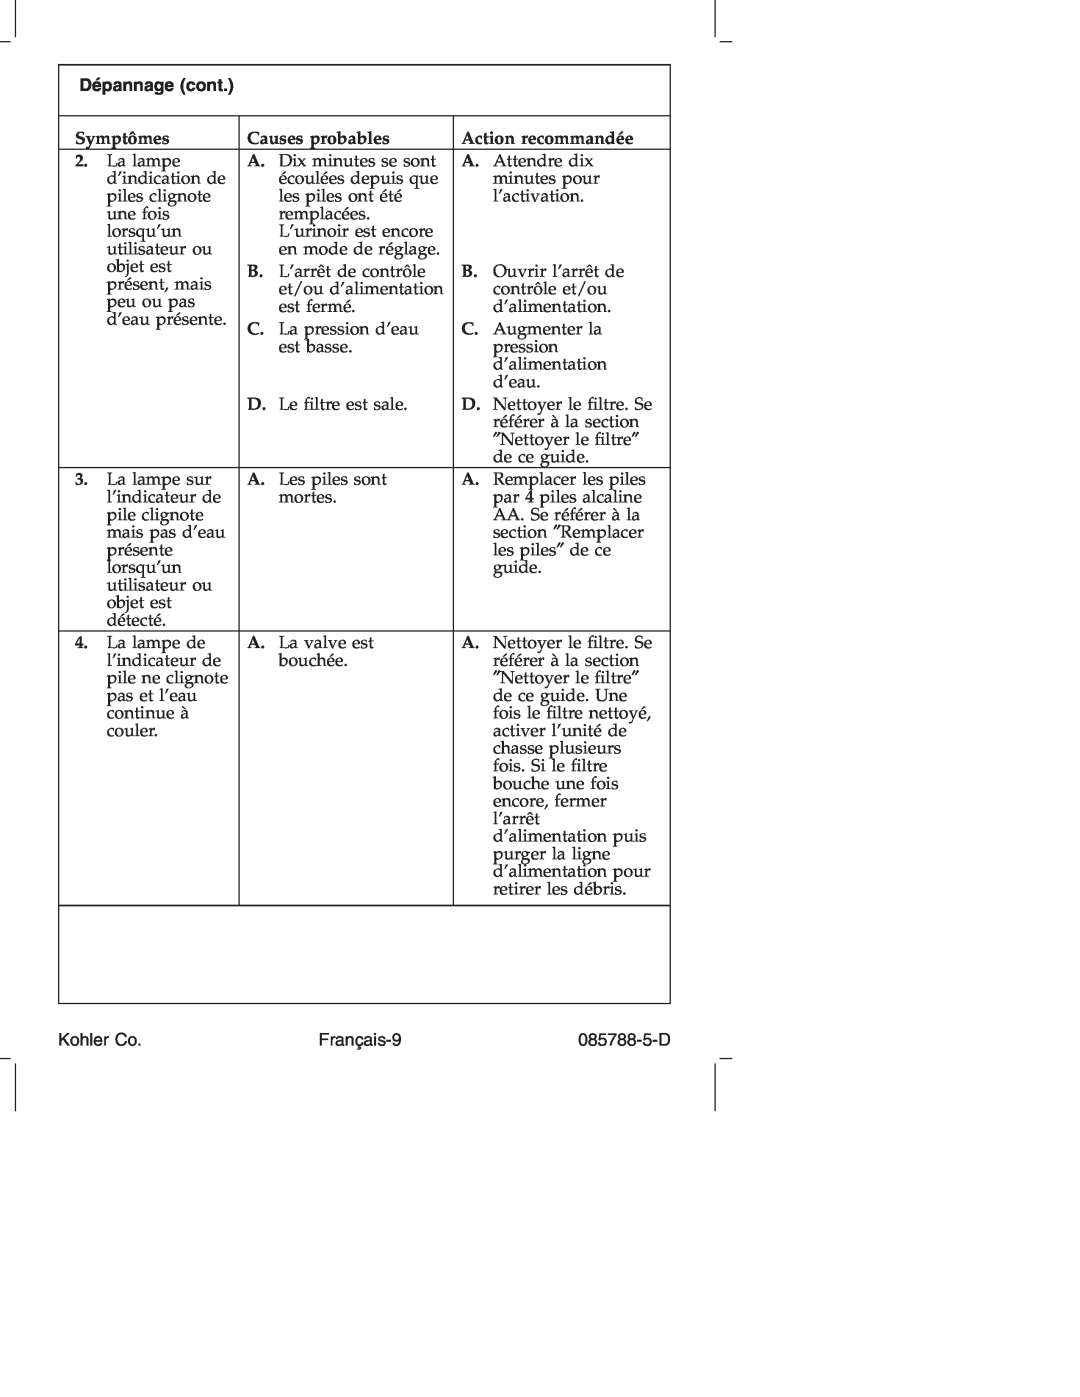 Kohler K4915 manual Dépannage cont, Français-9, Symptômes, Causes probables, Action recommandée, Kohler Co, 085788-5-D 